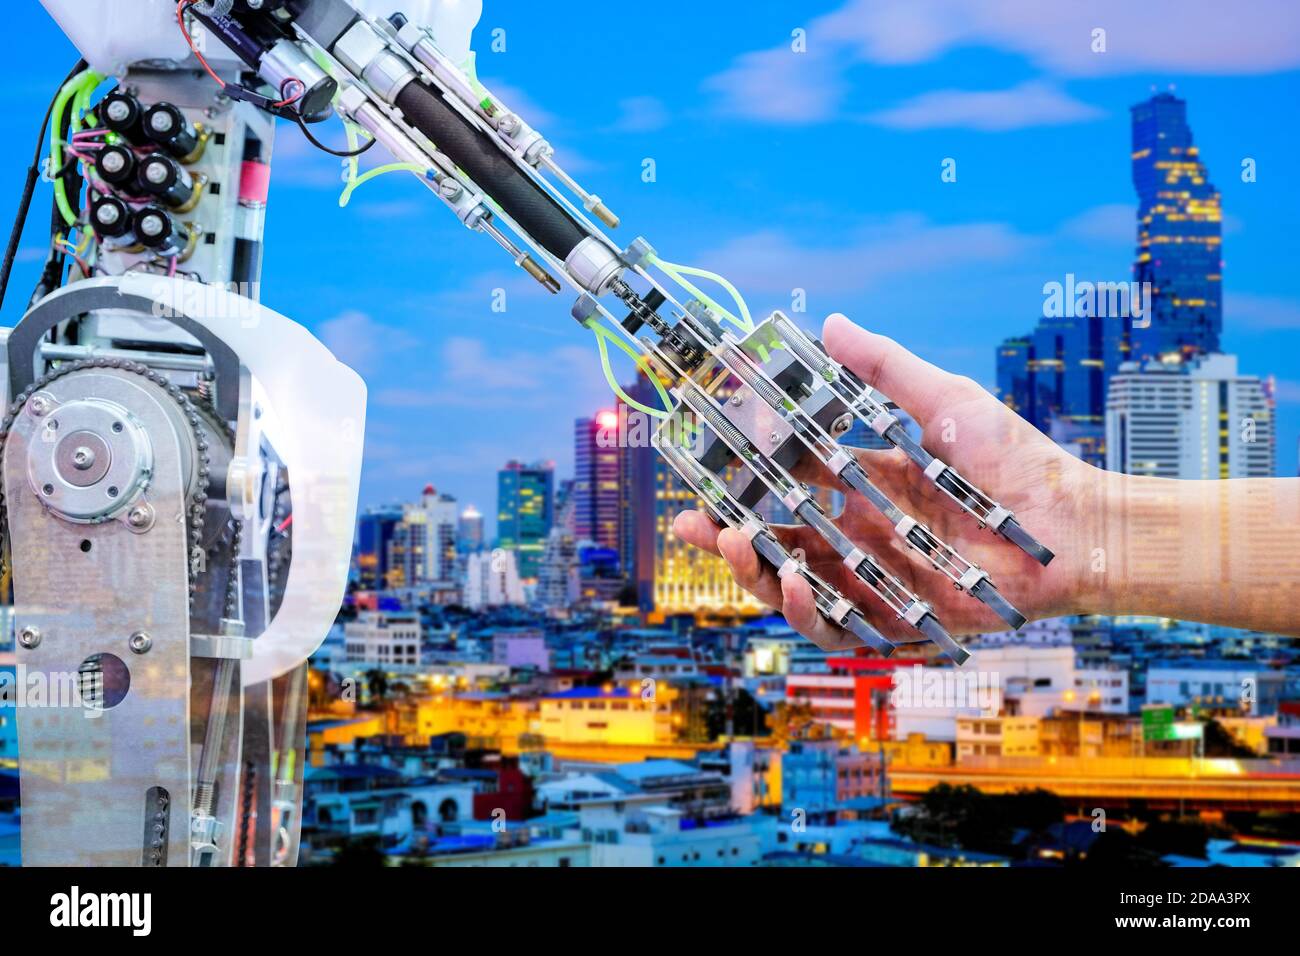 Ai robot poignée de main avec humain pour rejoindre le travail d'équipe sur construction floue sur fond bleu Banque D'Images